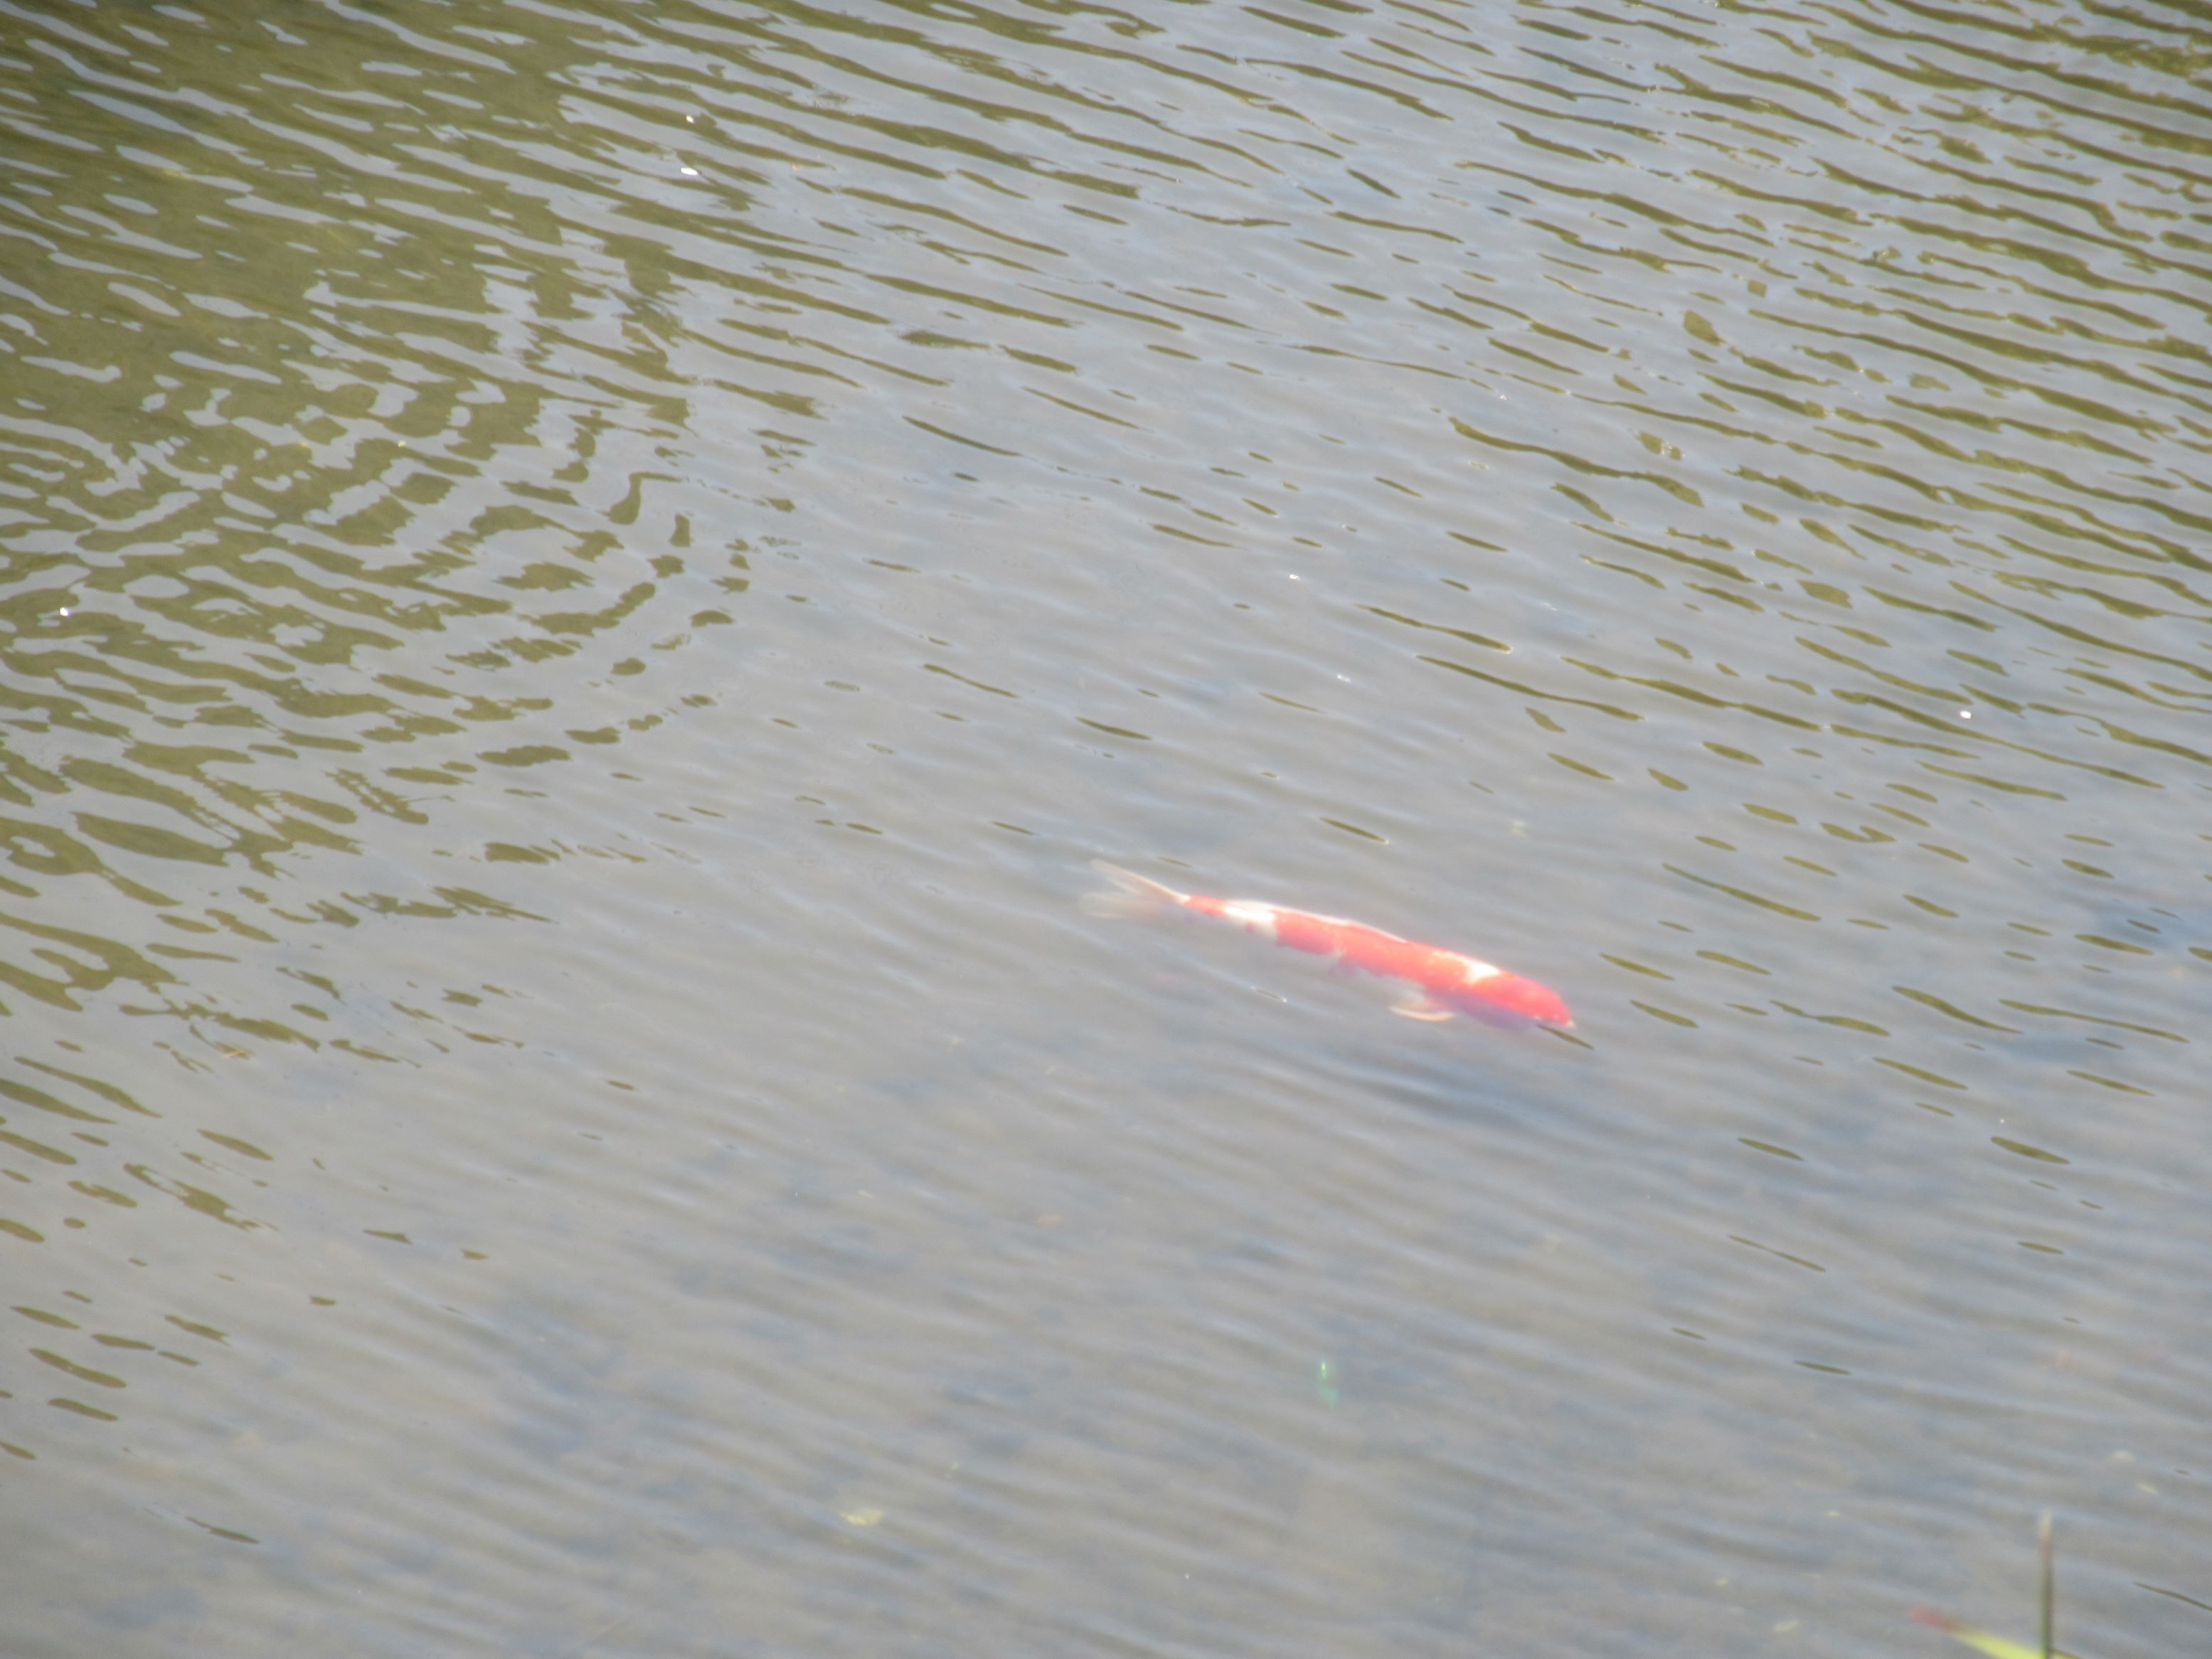 長崎県長崎市の眼鏡橋付近にて撮影した、鮮やかな赤色をした鯉です。